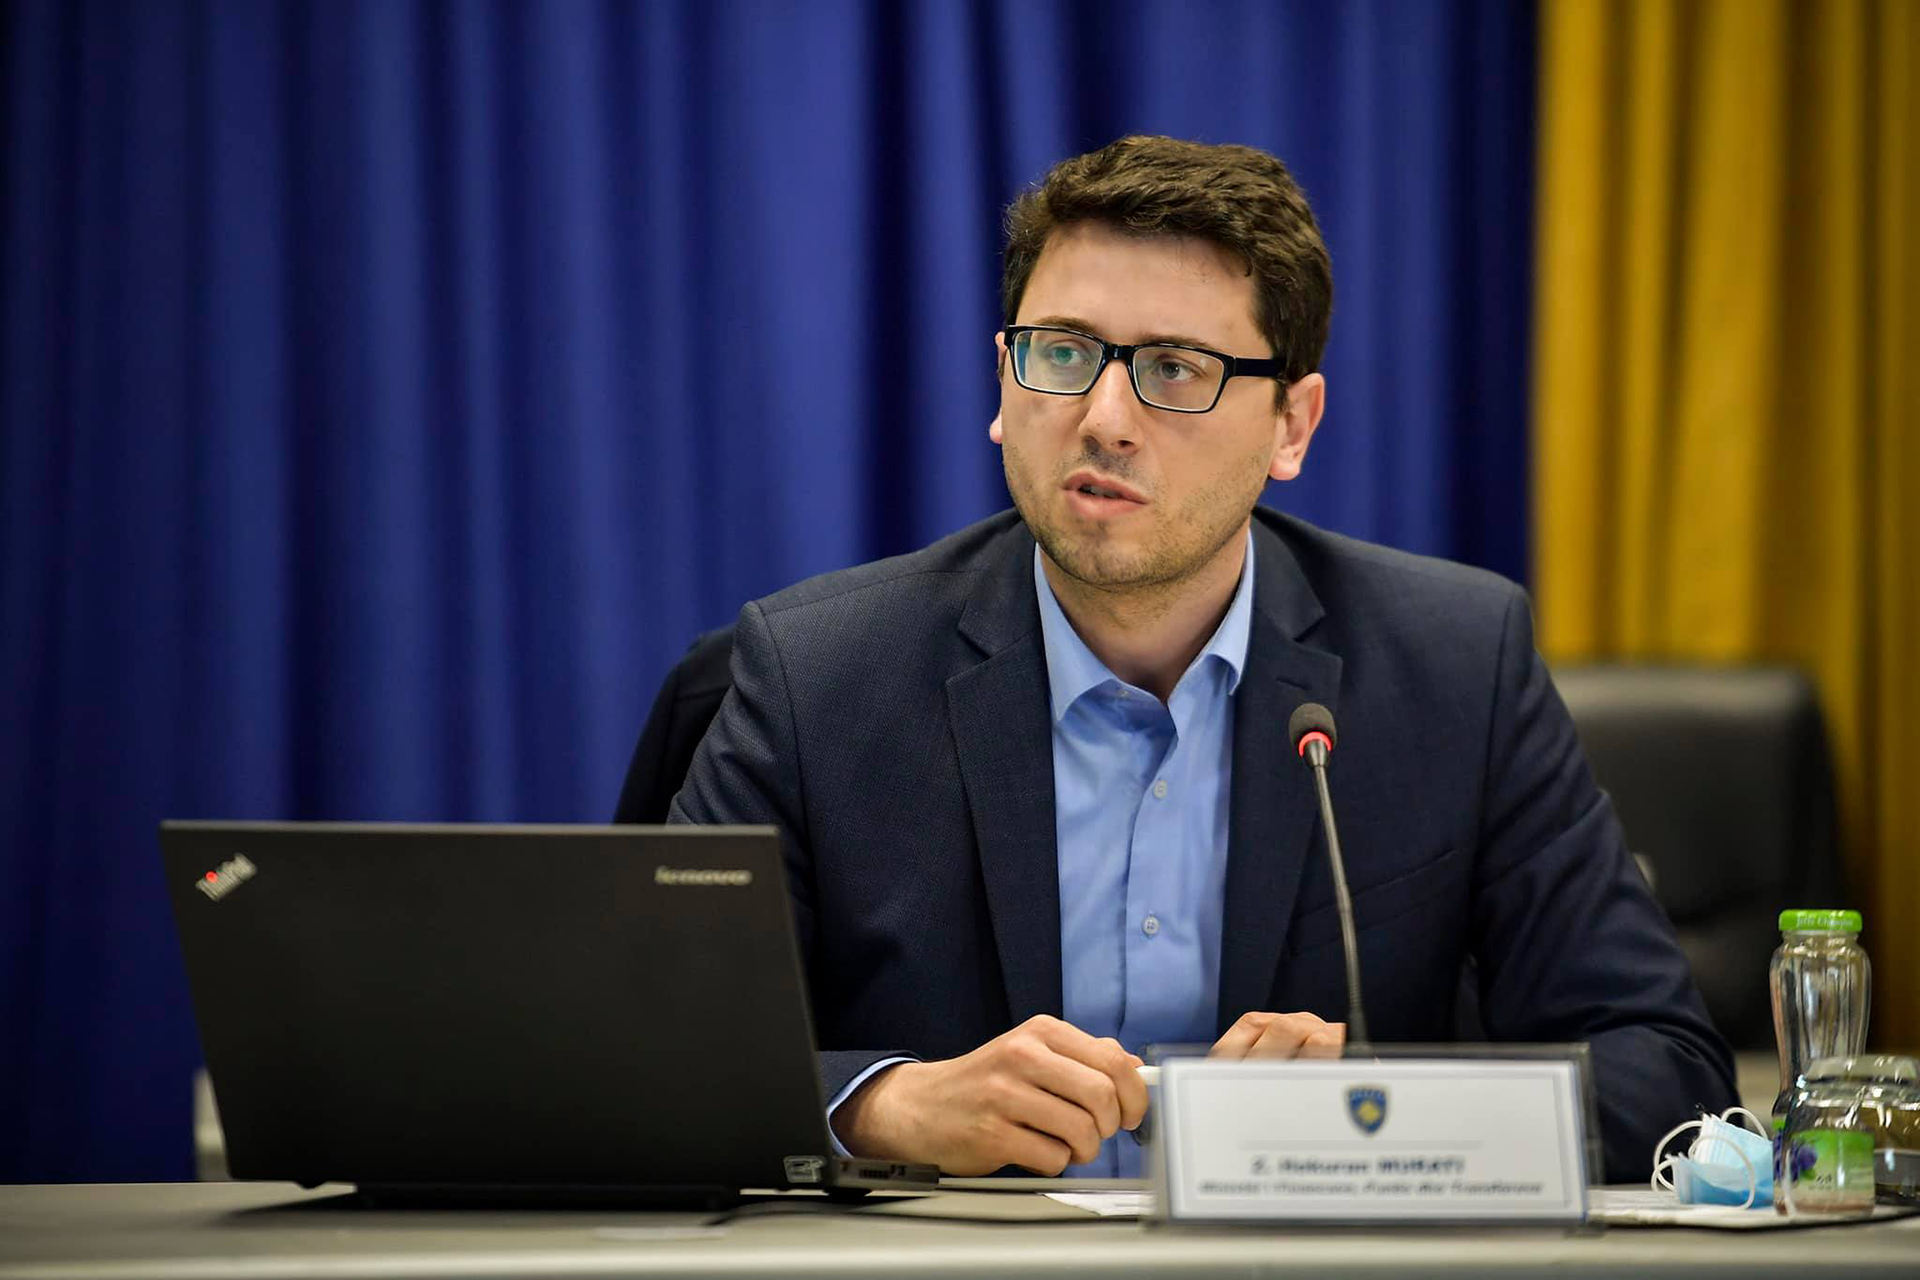 Ministri i Financave, Murati: Persona të paautorizuar tentuan të fusin 117 milionë dinarë në Kosovë, nuk u lejuan